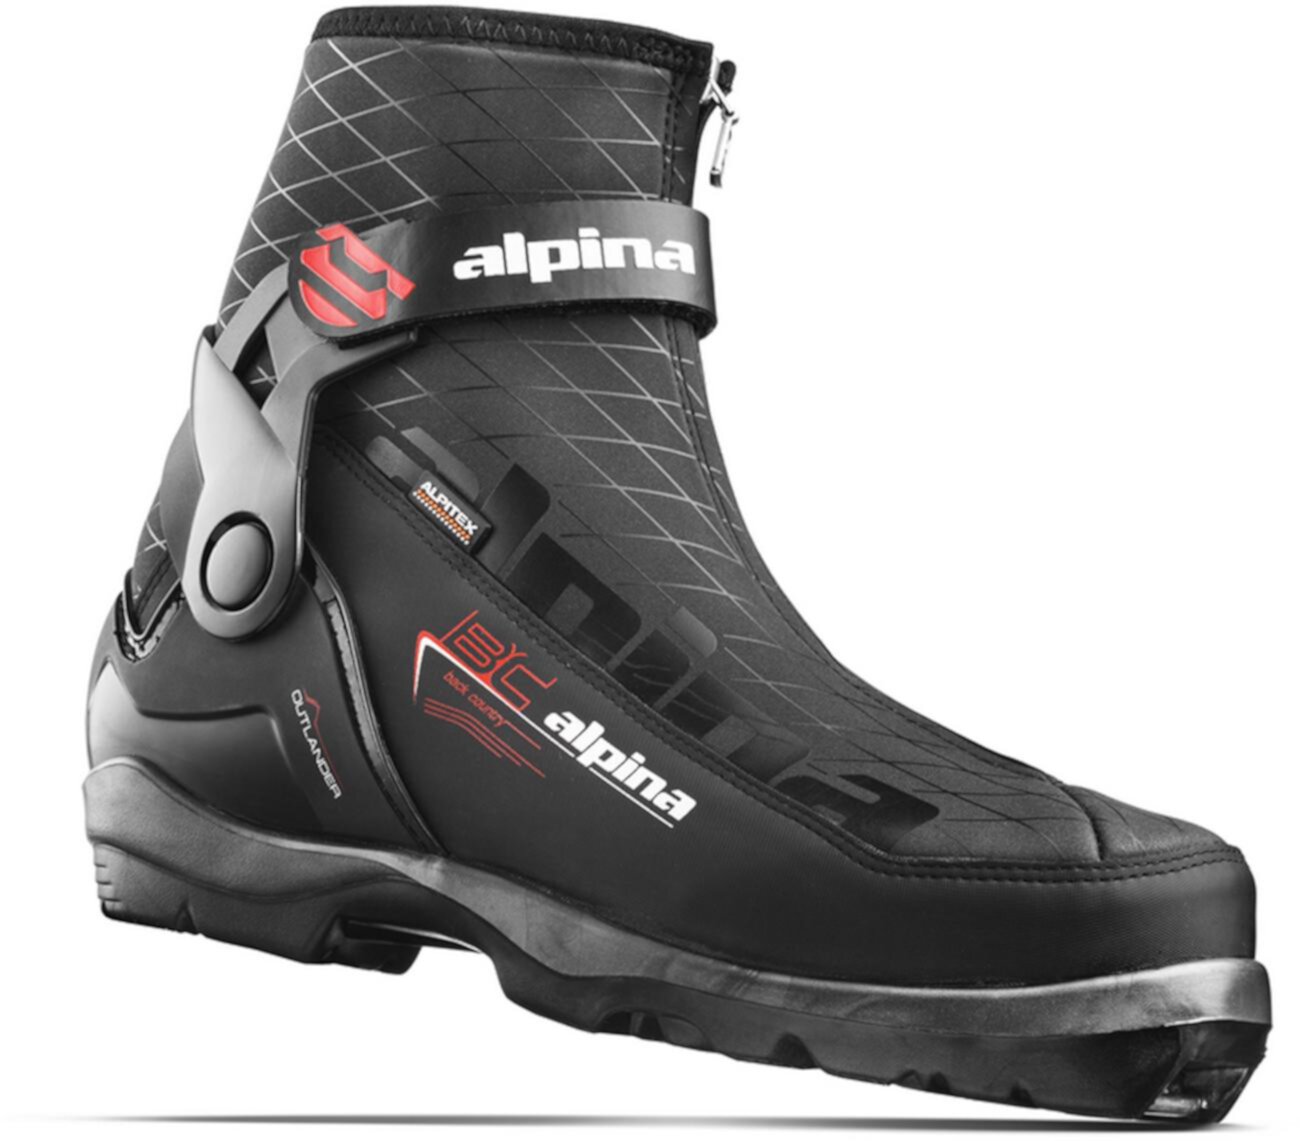 Ботинки для беговых лыж Outlander - мужские Alpina